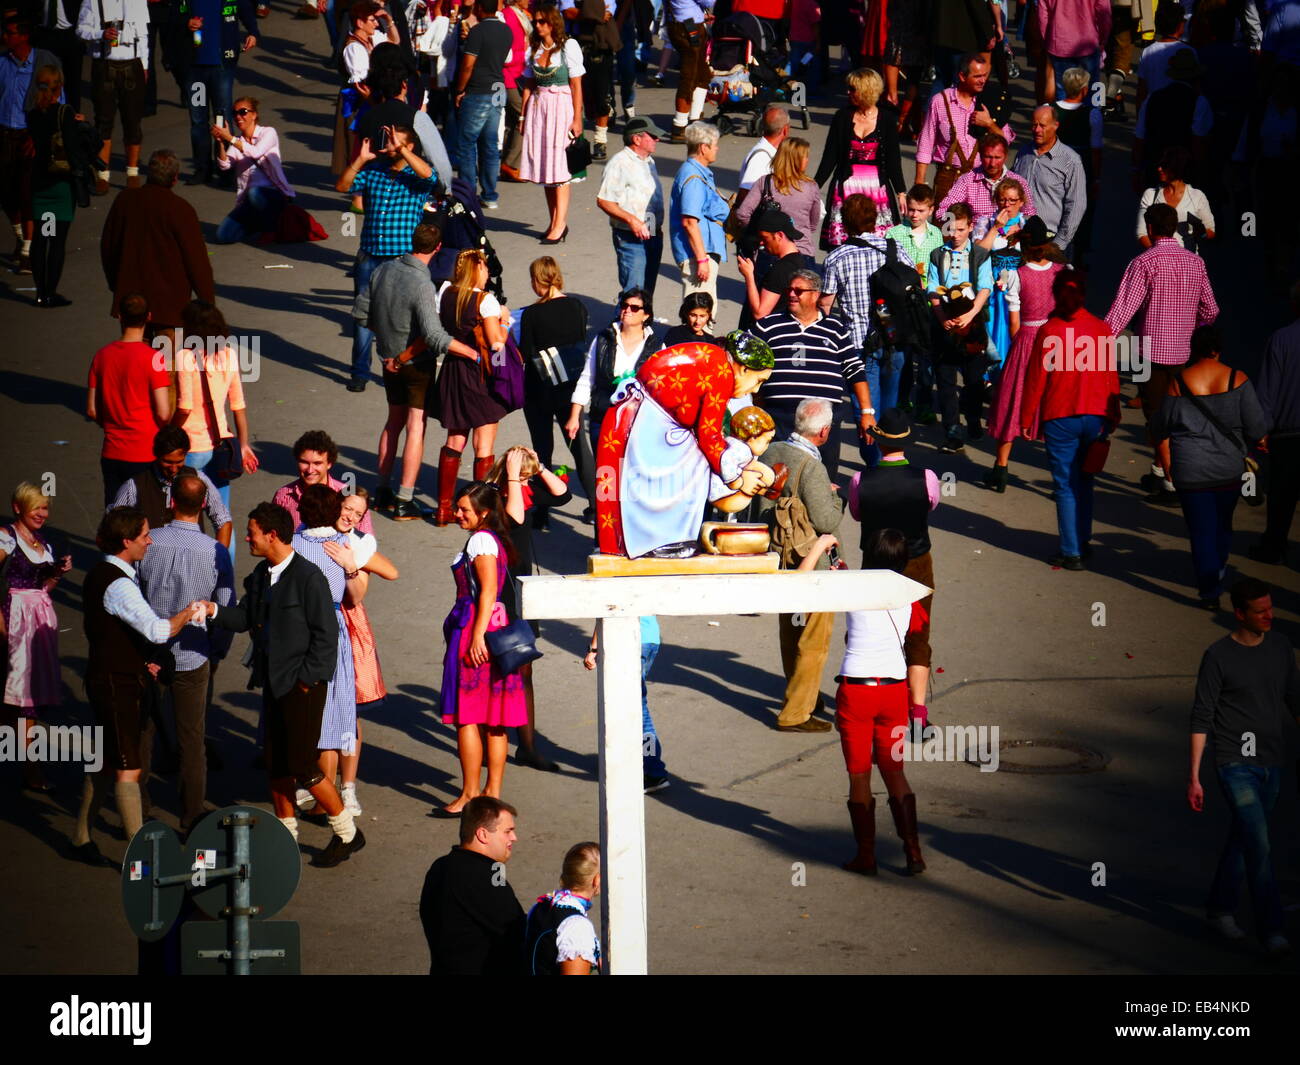 Germania affollata la folla a piedi per Monaco di Baviera - Festa della birra Oktoberfest Oktoberfest Foto Stock